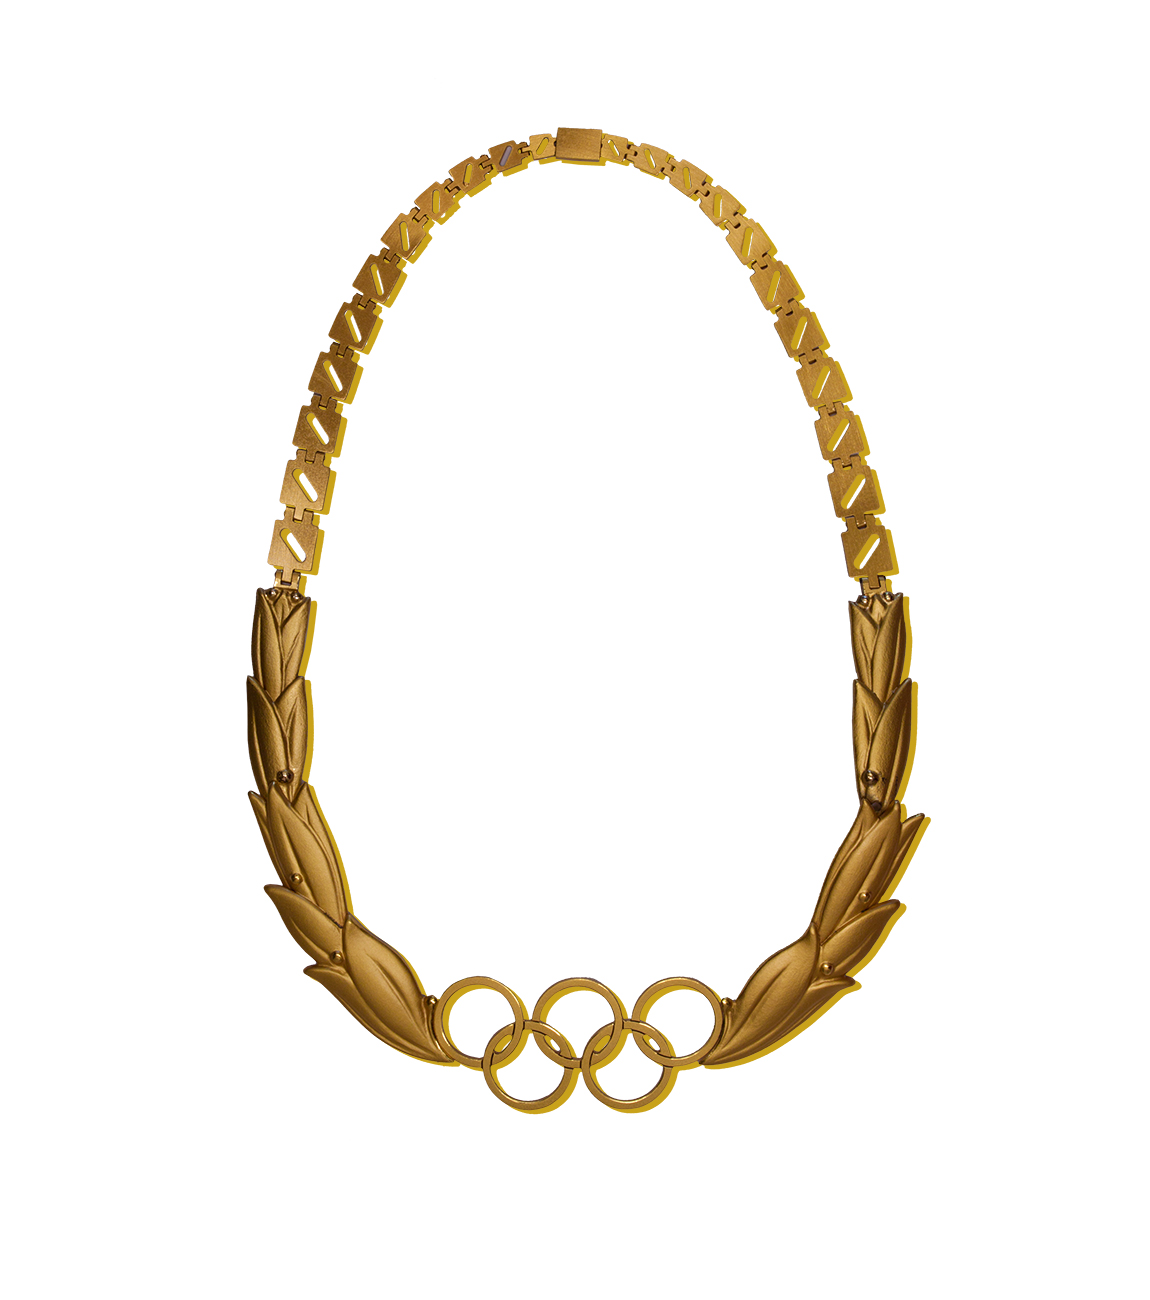 Auszeichnung des IOC mit stilisierten Lorbeerblättern und den Olympischen Ringen